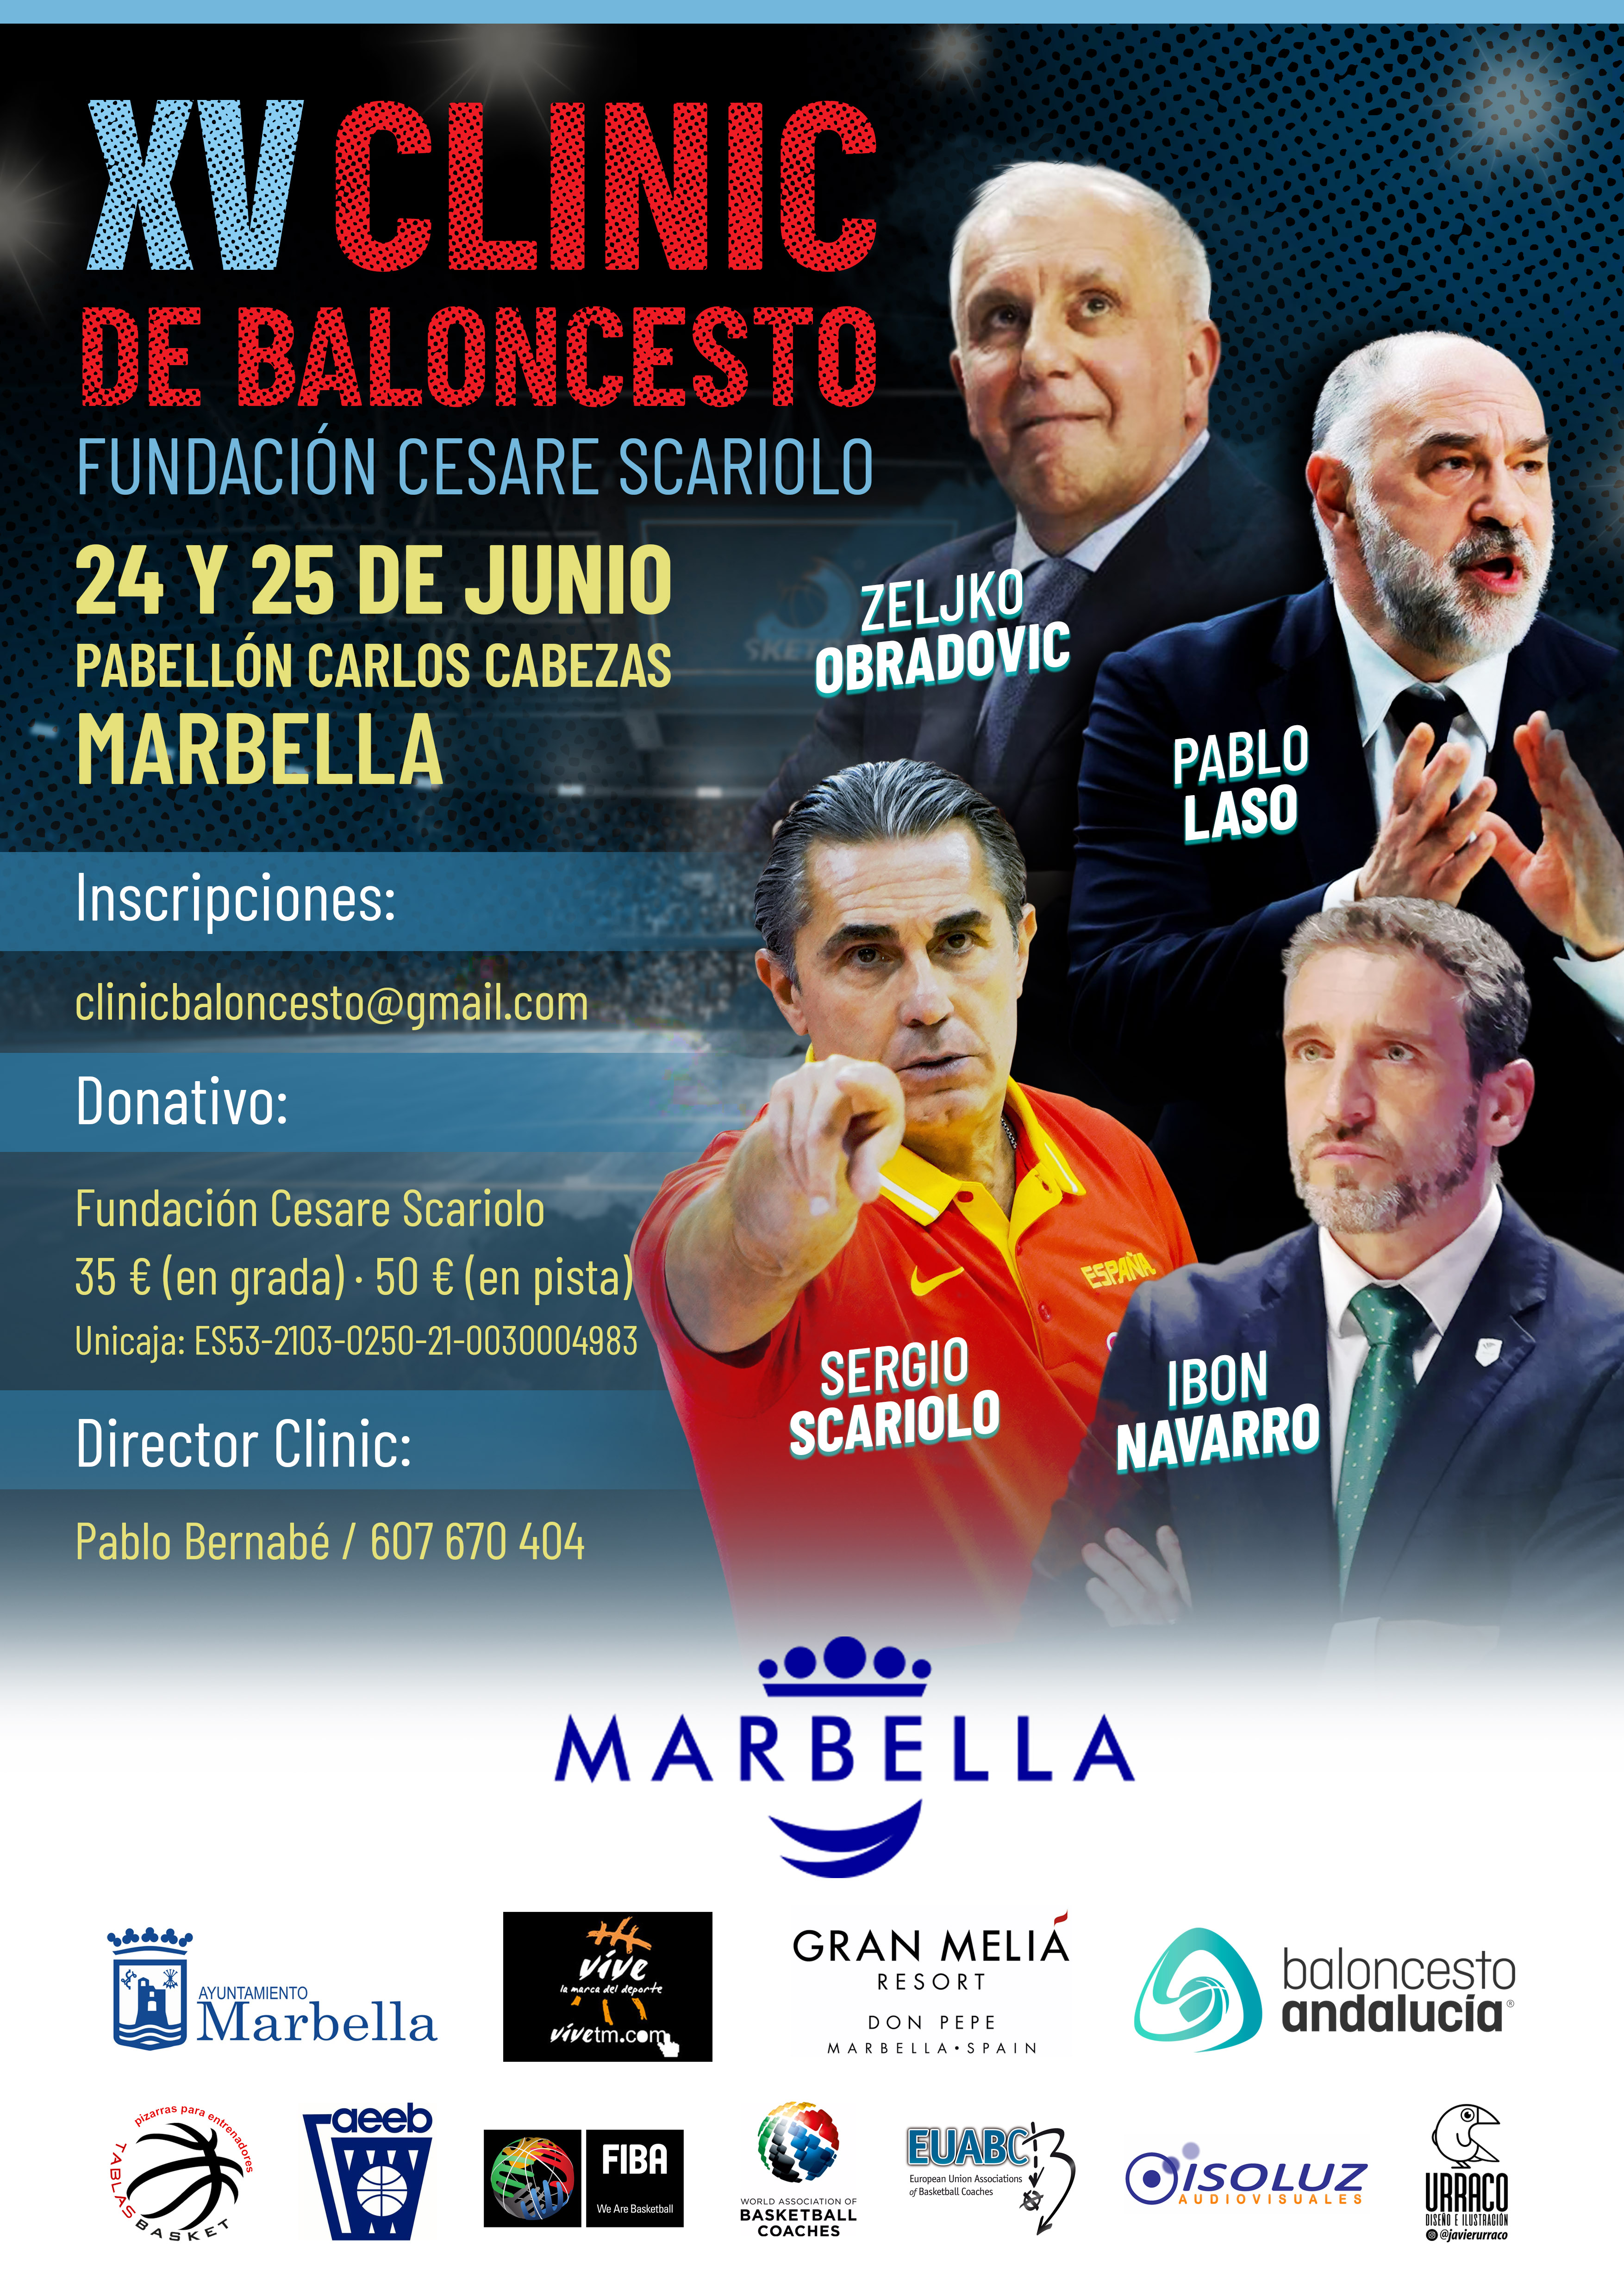 XV Clínic Internacional de Baloncesto Fundación Cesare Scariolo